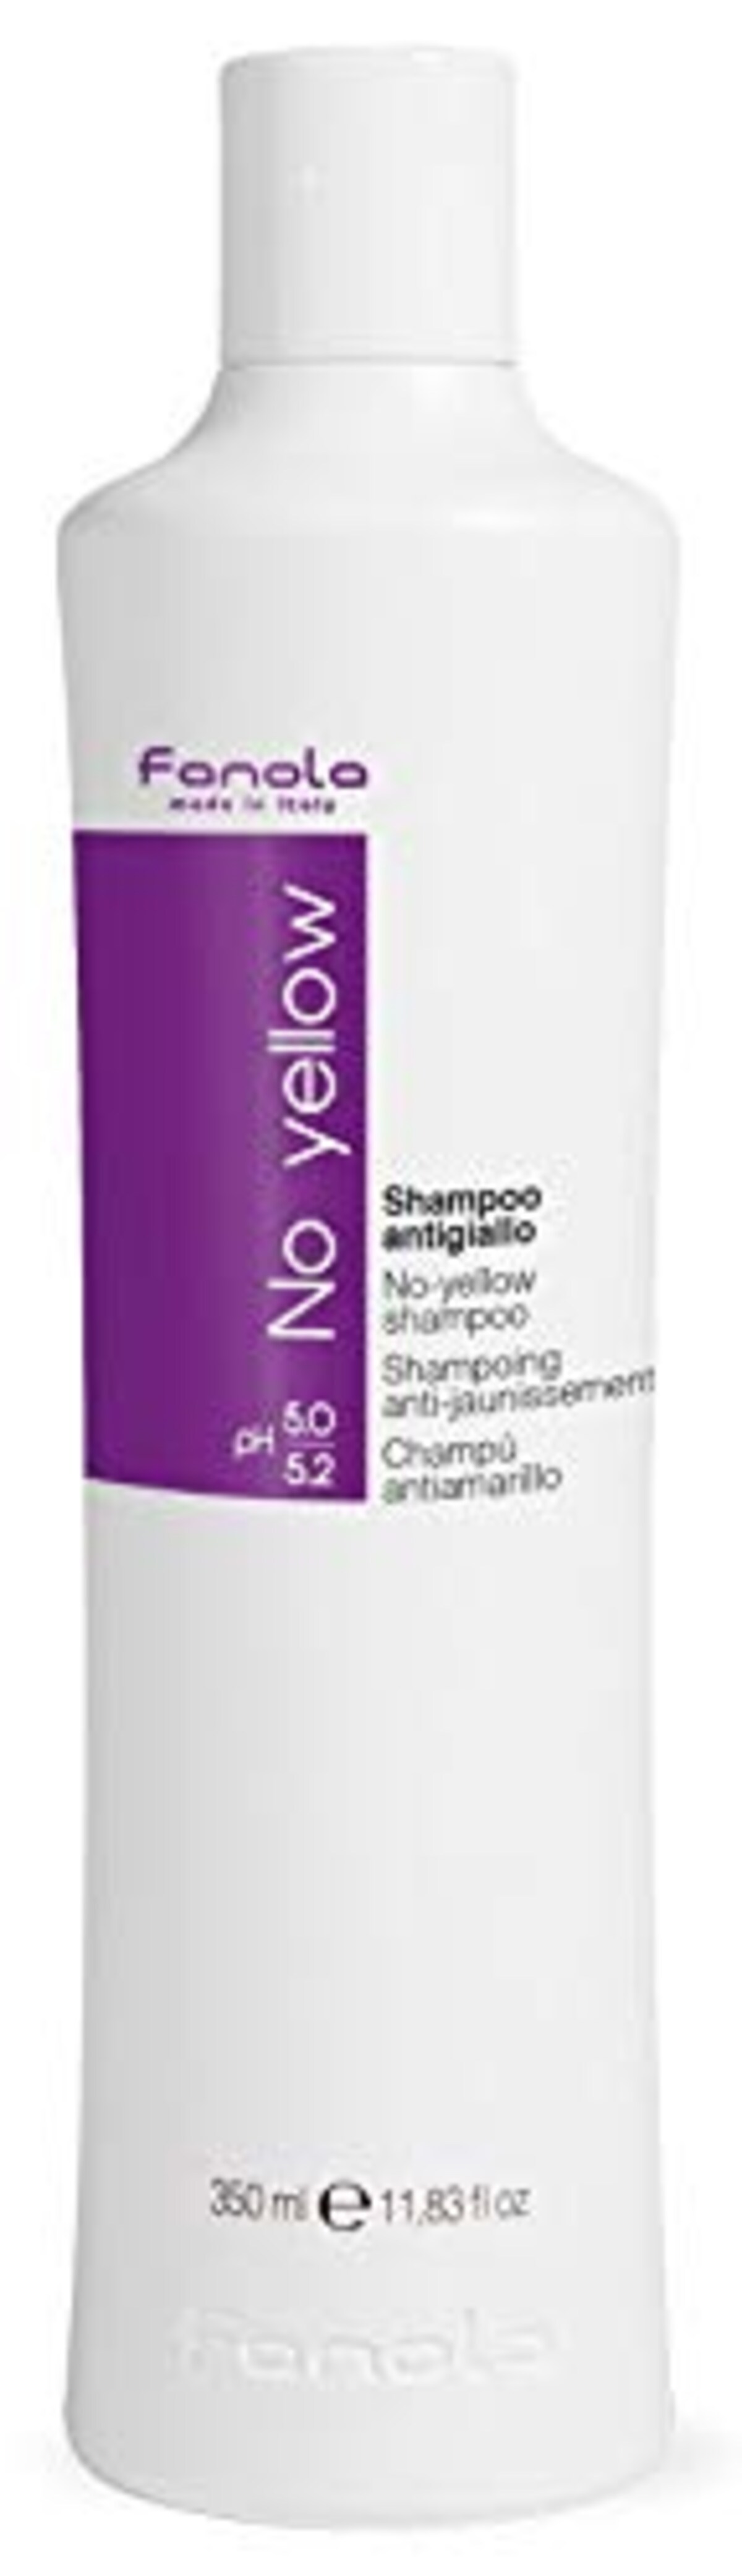 No Yellow Shampoo, 350 ml